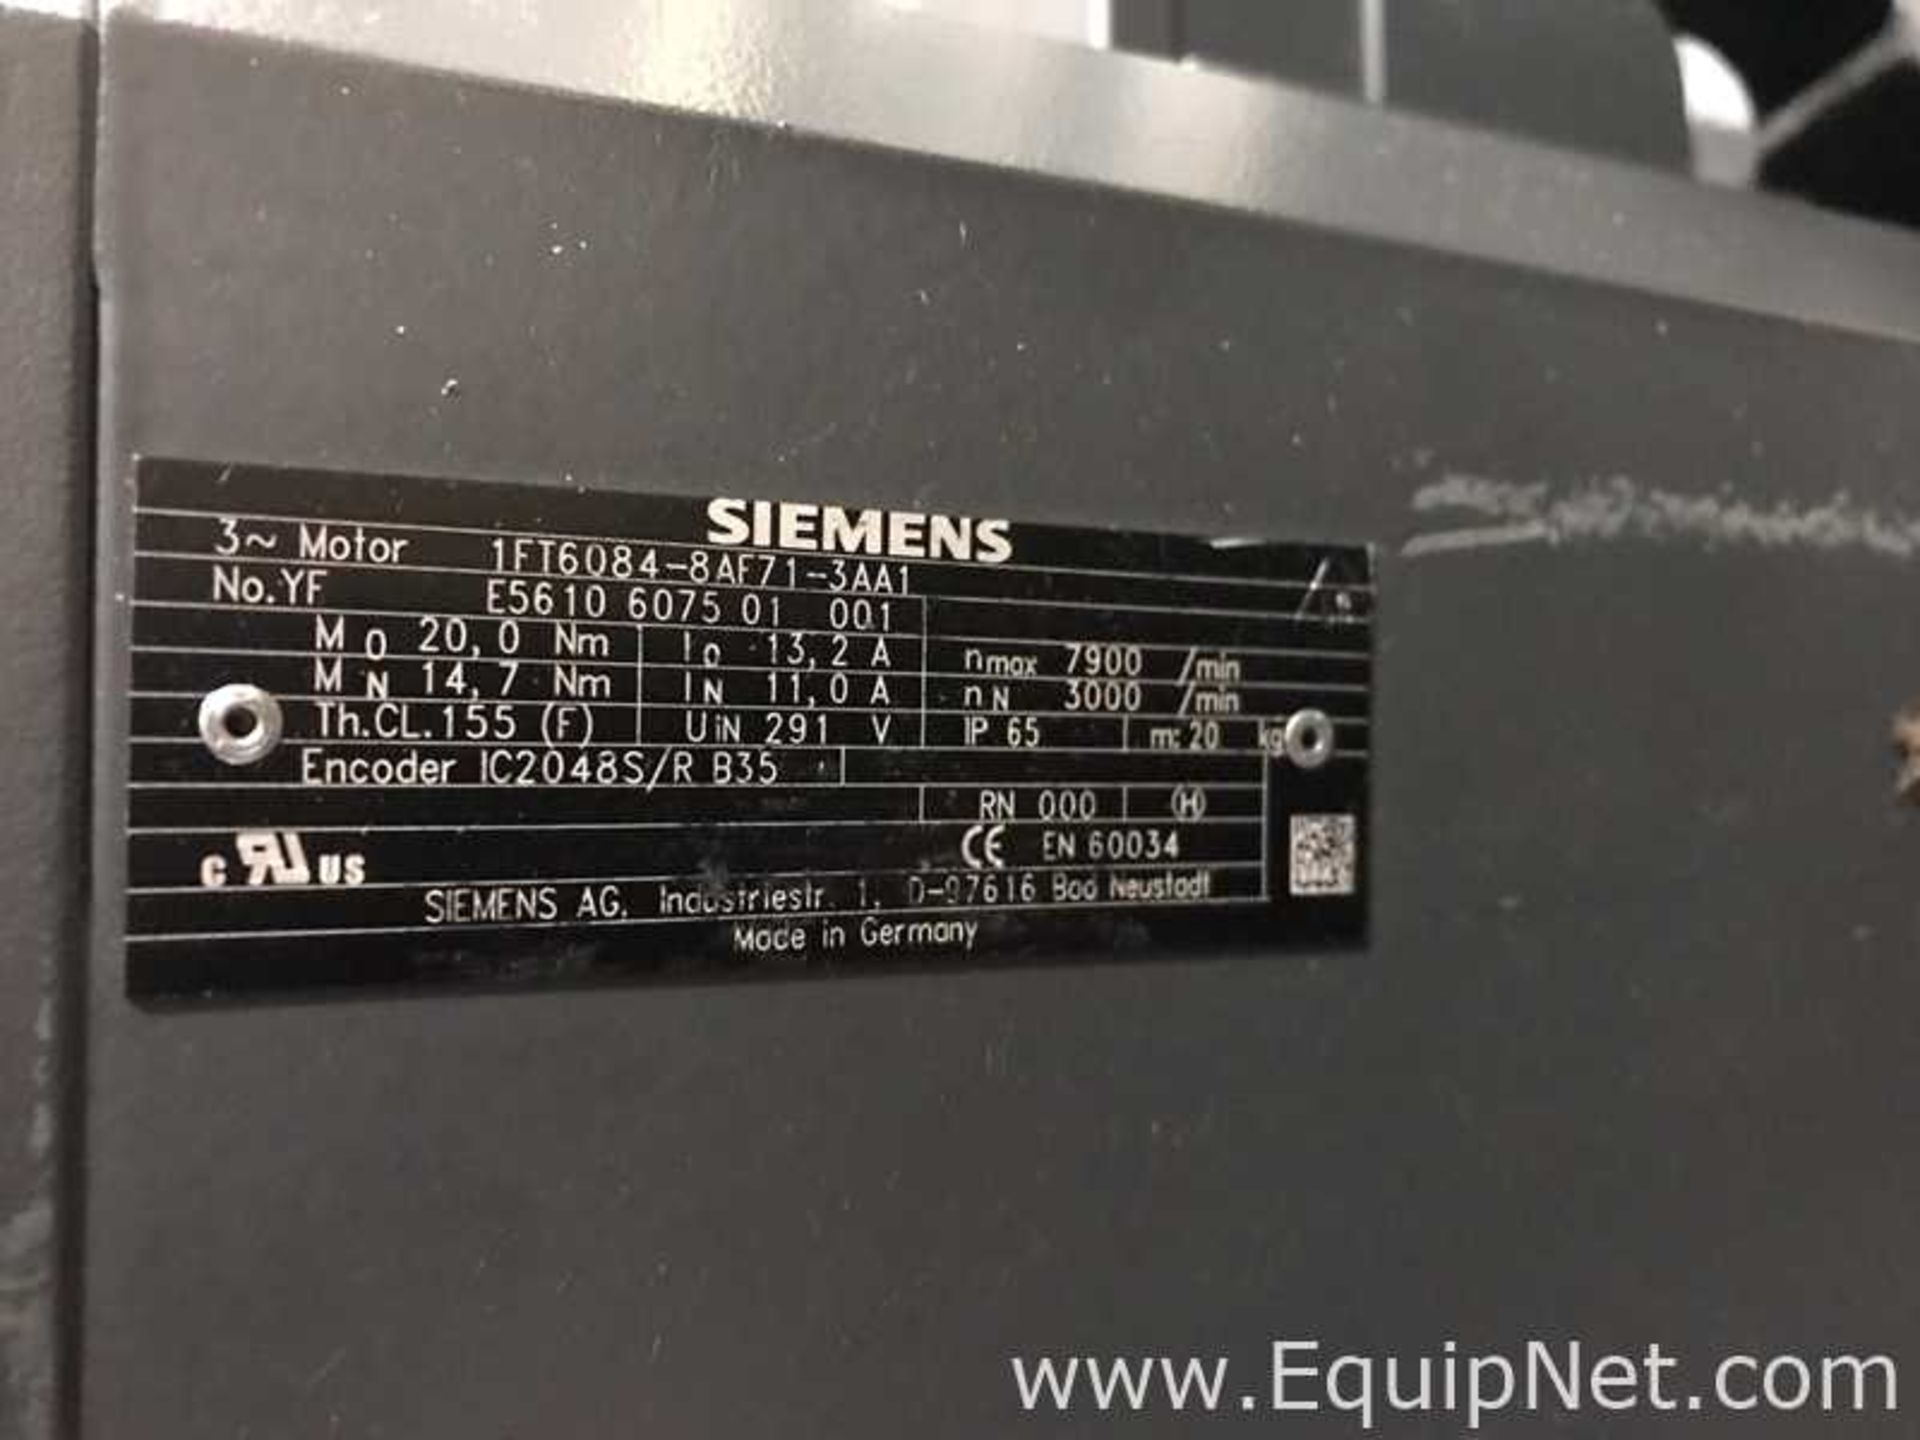 Siemens 1FT6084-8AF71-3AA1 Servo Motor - Image 3 of 3